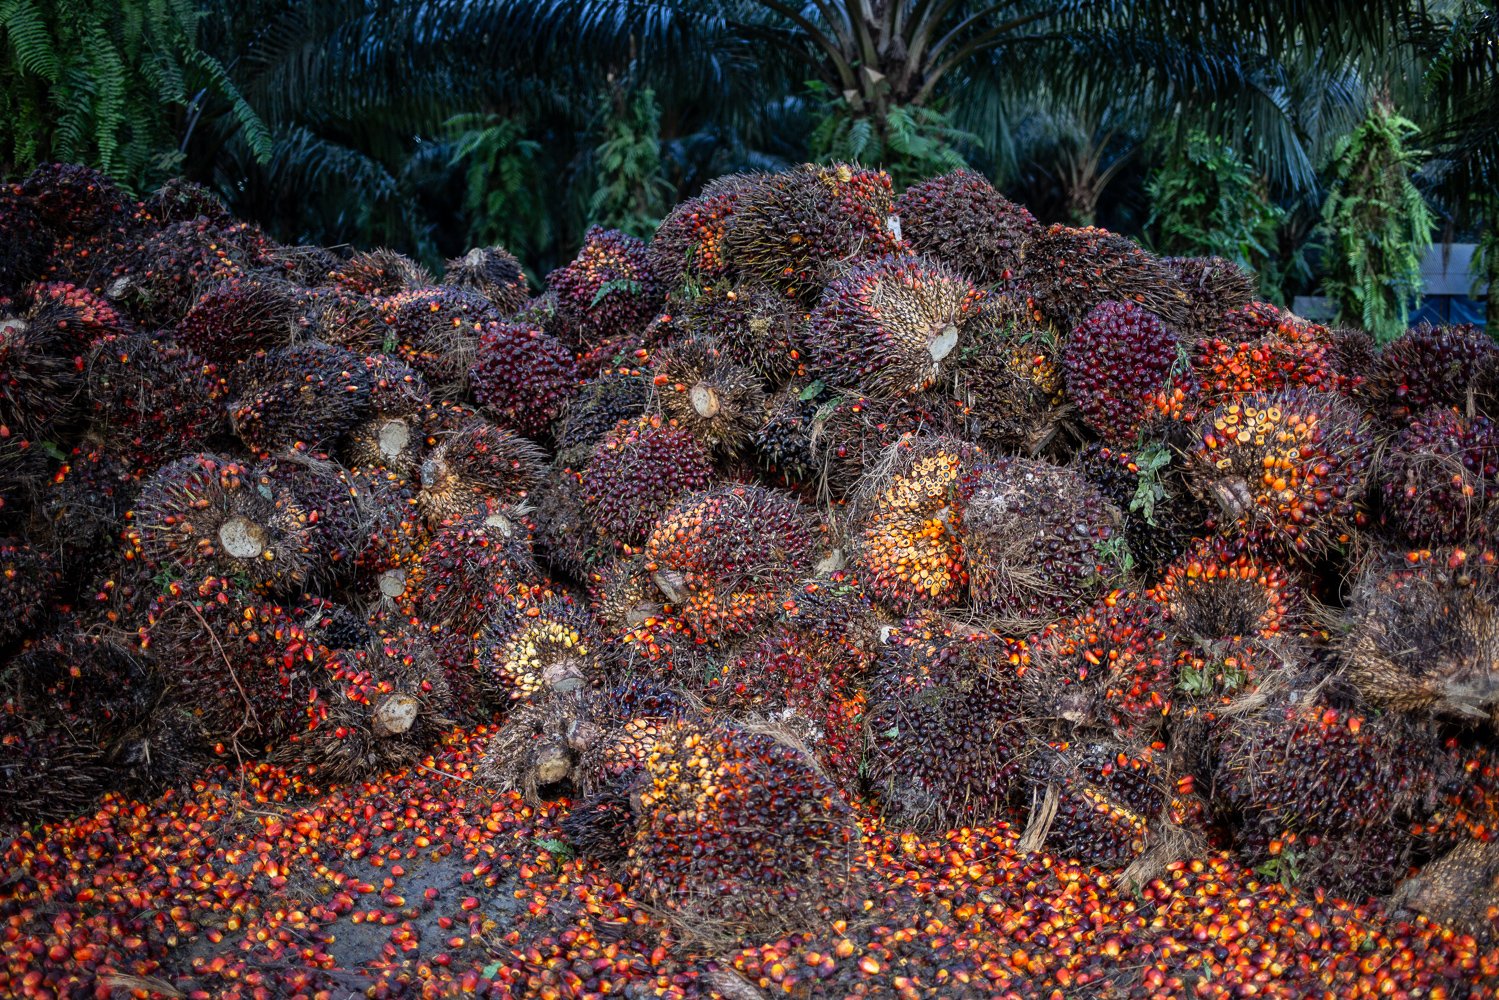 Tandan buah segar hasil perkebunan kelapa sawit di Medang Sari, Kecamatan Arut Selatan, Kotawaringin Barat, Kalimantan Tengah, Jumat (19/8). Petani belum menikmati efek positif dari pembebasan pungutan ekspor minyak sawit mentah yang sudah dirasakan para pelaku industri kelapa sawit sejak 15 Juli 2022. Harga tandan buah segar atau TBS petani masih di bawah Rp 1.500 per kilogram dan ada pula pabrik yang belum mau menampung hasil panen mereka dengan alasan tangki minyak sawit mentah atau CPO penuh.